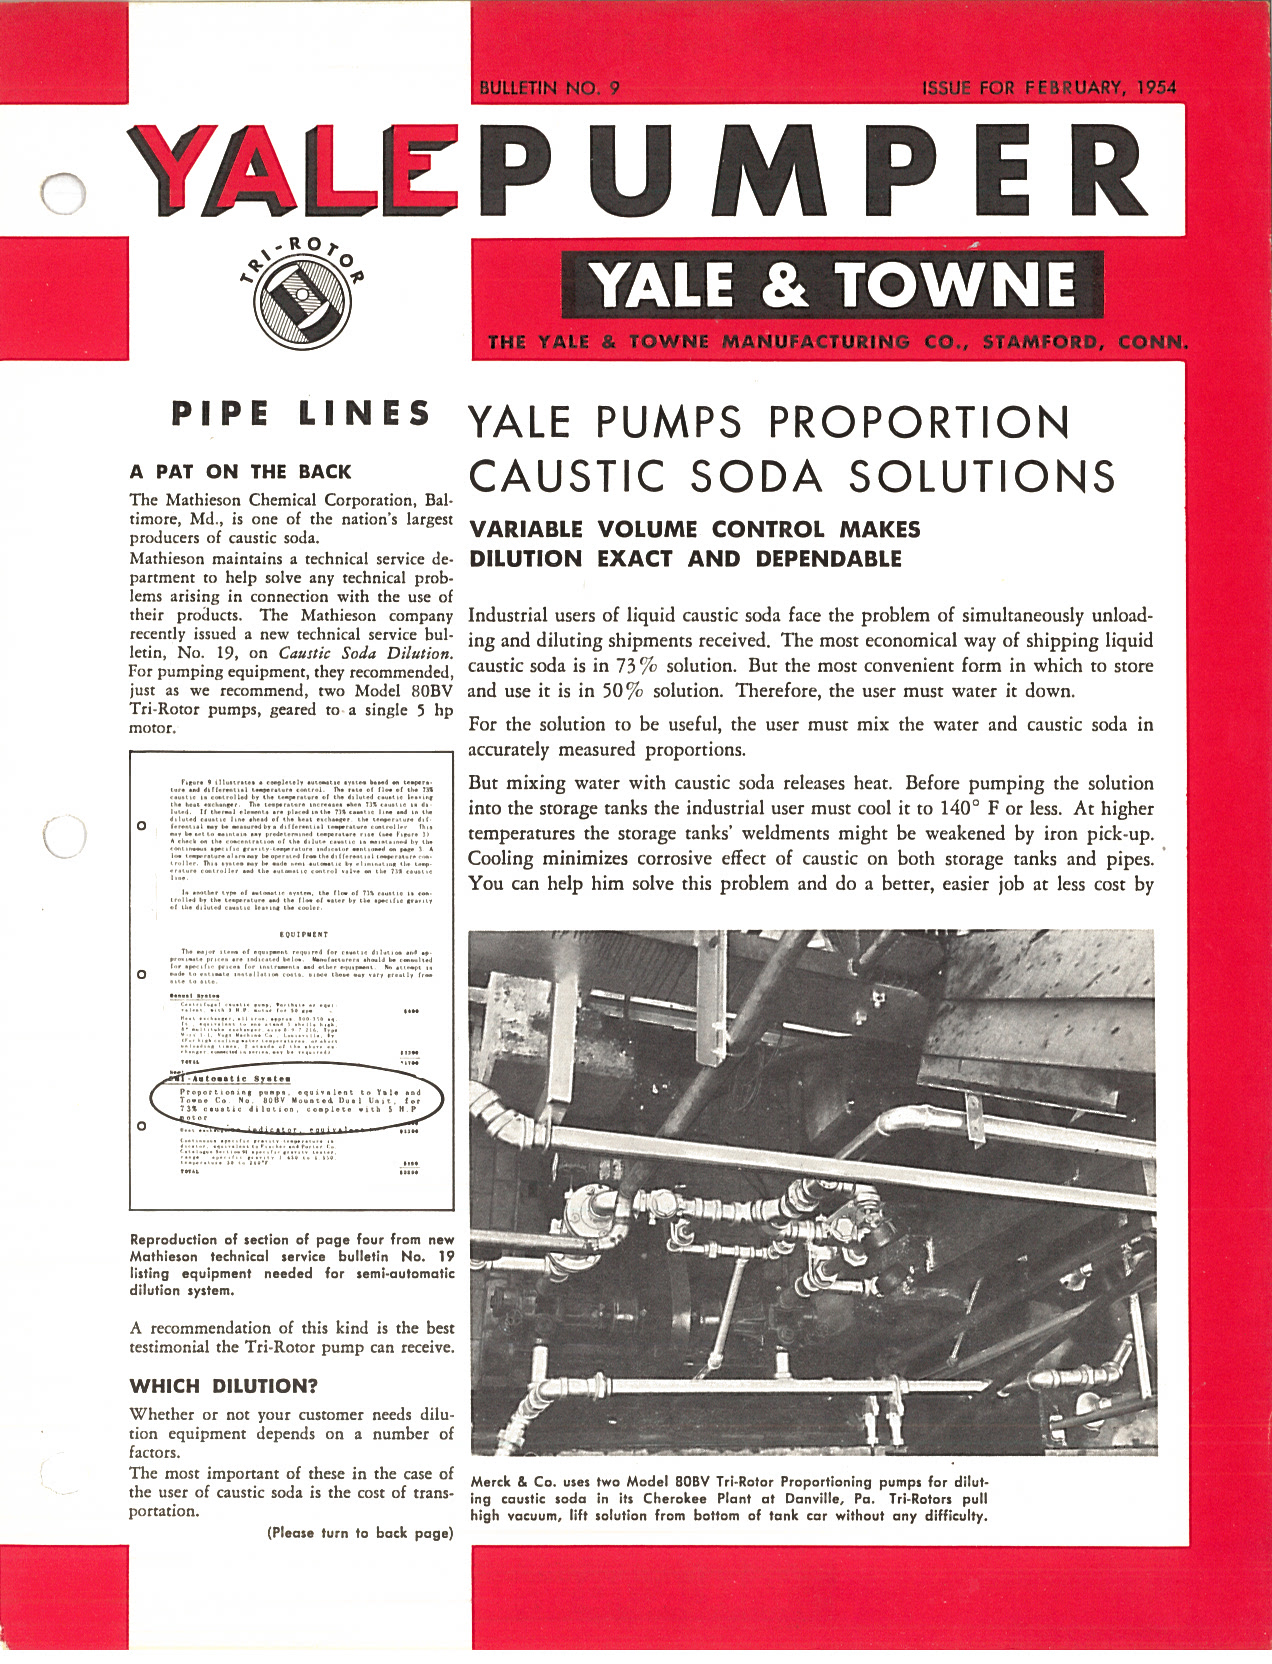 Yale & Towne Tri-Rotor Pumper Bulletin No. 9 February 1954 Caustic Soda